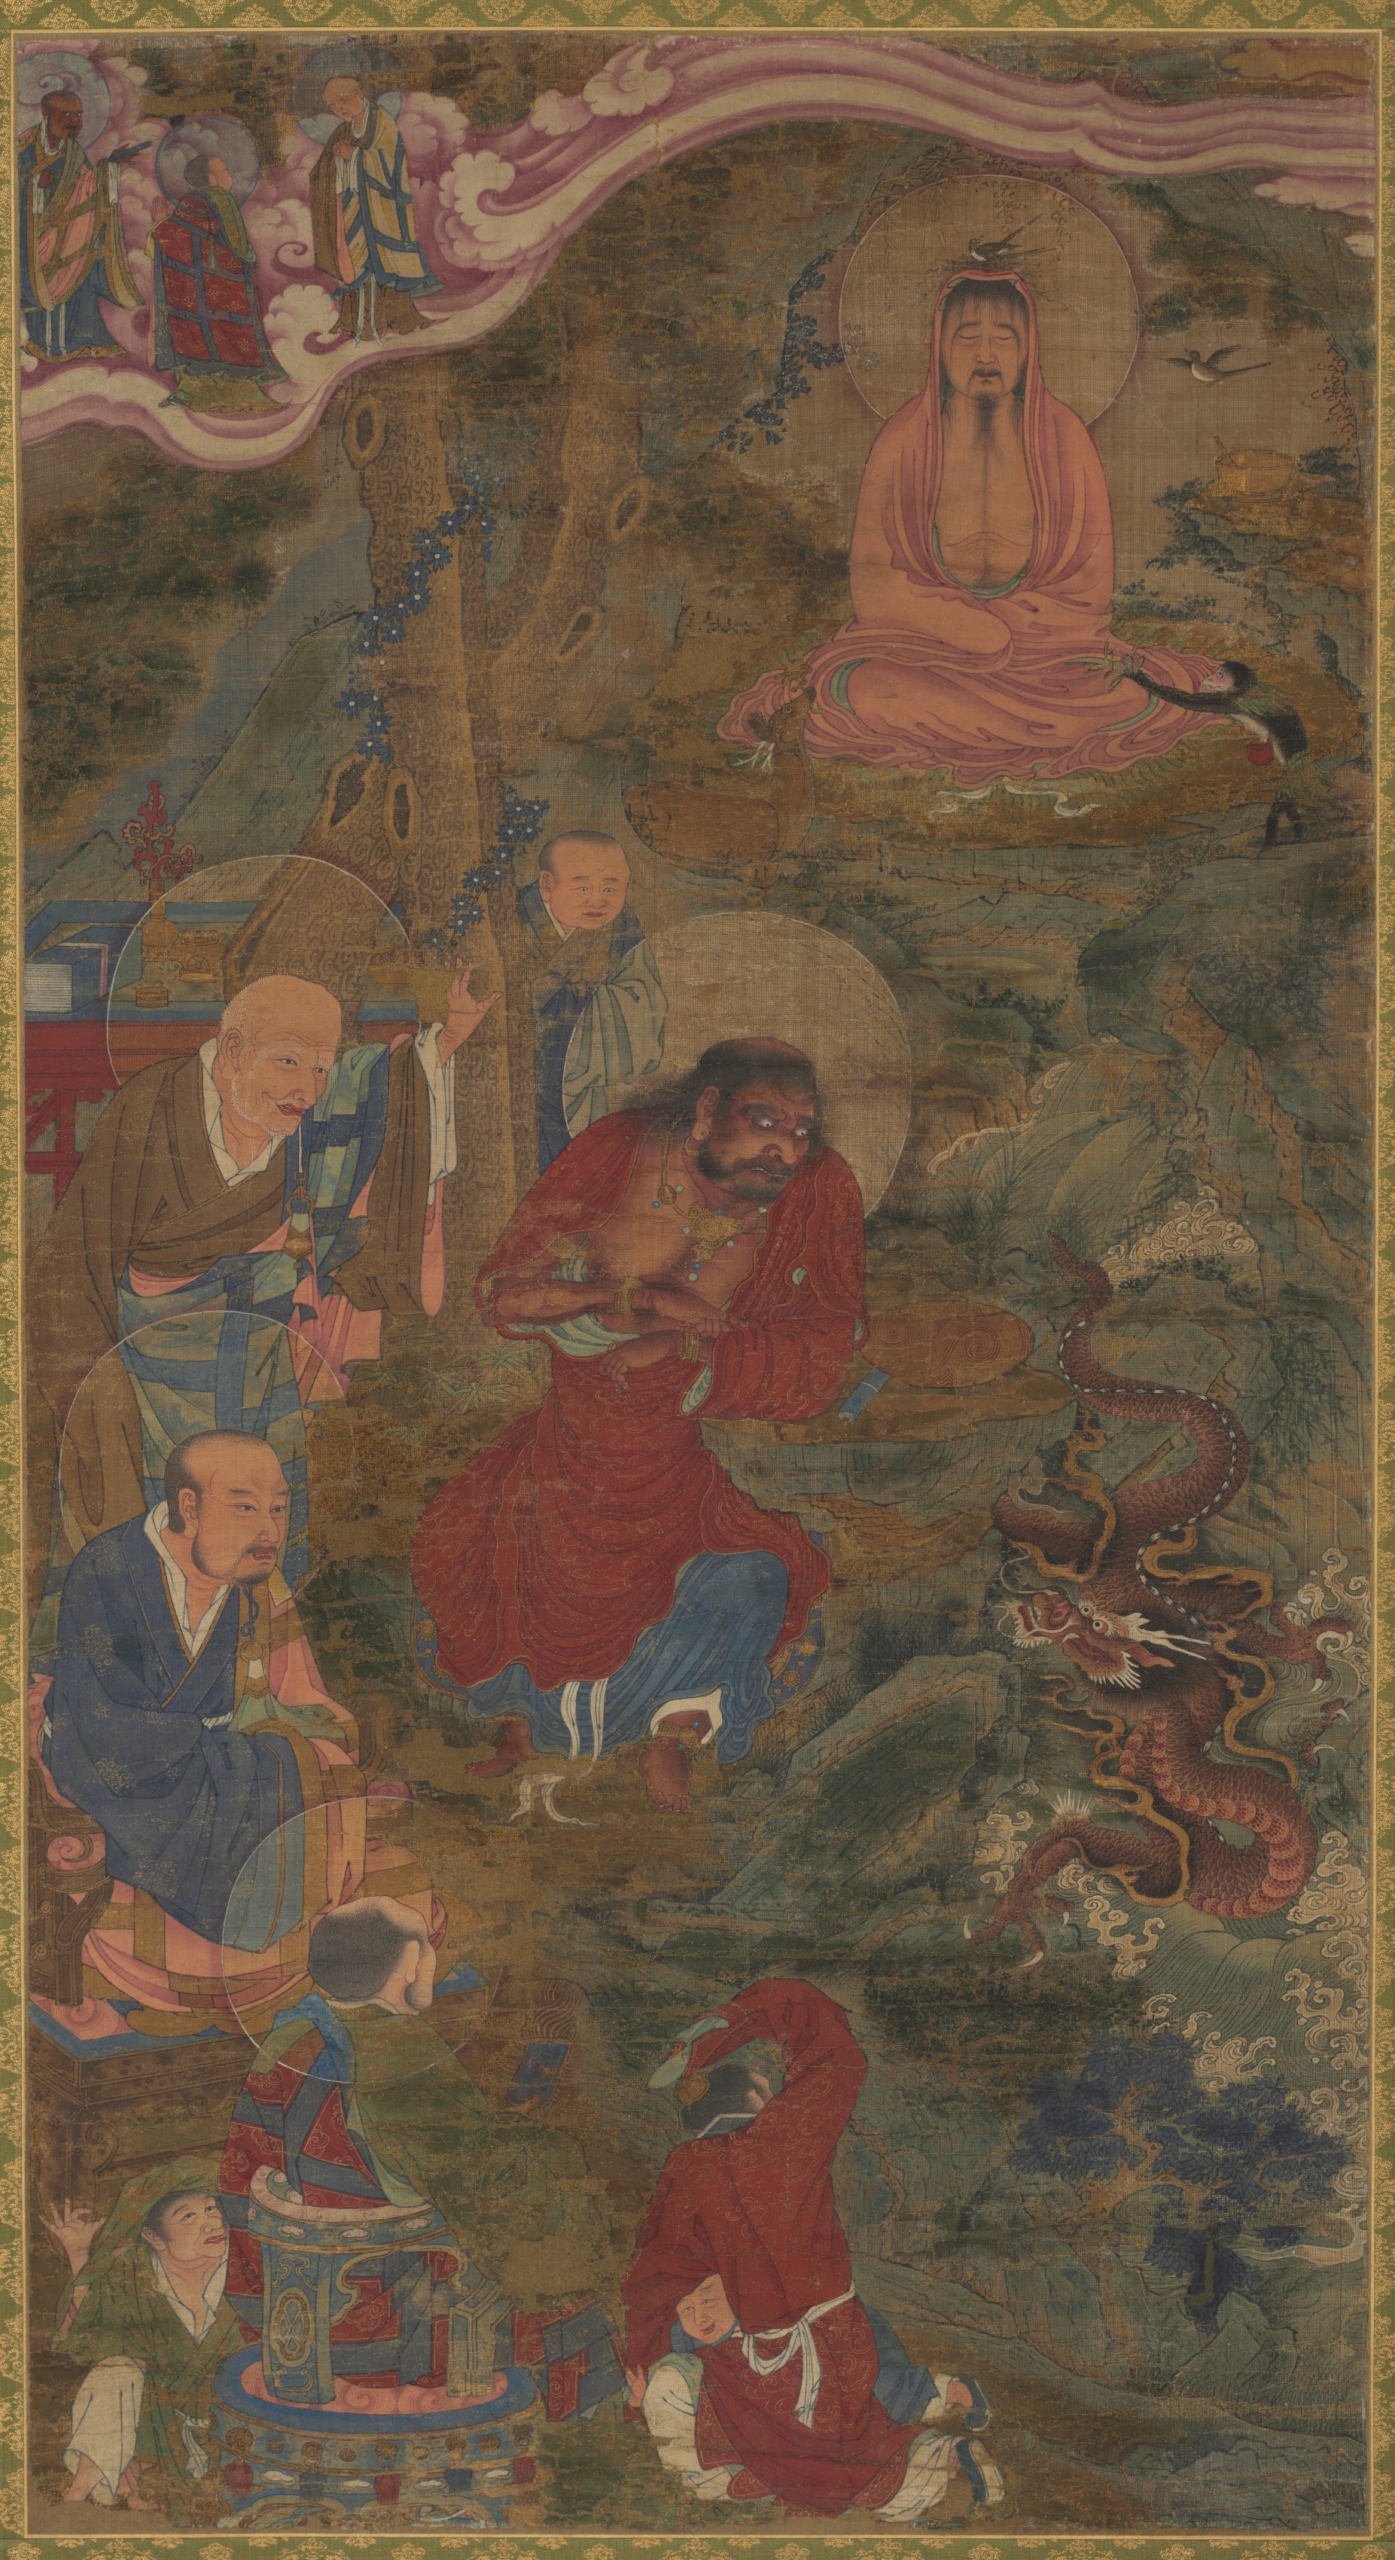 Các đệ tử Phật giáo vây quanh một chú rồng, biểu tượng của sự giác ngộ, với Đức Phật Thích Ca Mâu Ni đang ngồi thiền ở phía trên bên phải của bức tranh treo cuộn. Tác phẩm “Miracle of the Dragon” (Uy lực của rồng), những năm 1600, của họa sĩ thời nhà Minh. Tranh cuộn lụa vàng có màu bằng mực. Bảo tàng Nghệ thuật Cleveland, Ohio. (Ảnh: Tài liệu công cộng)